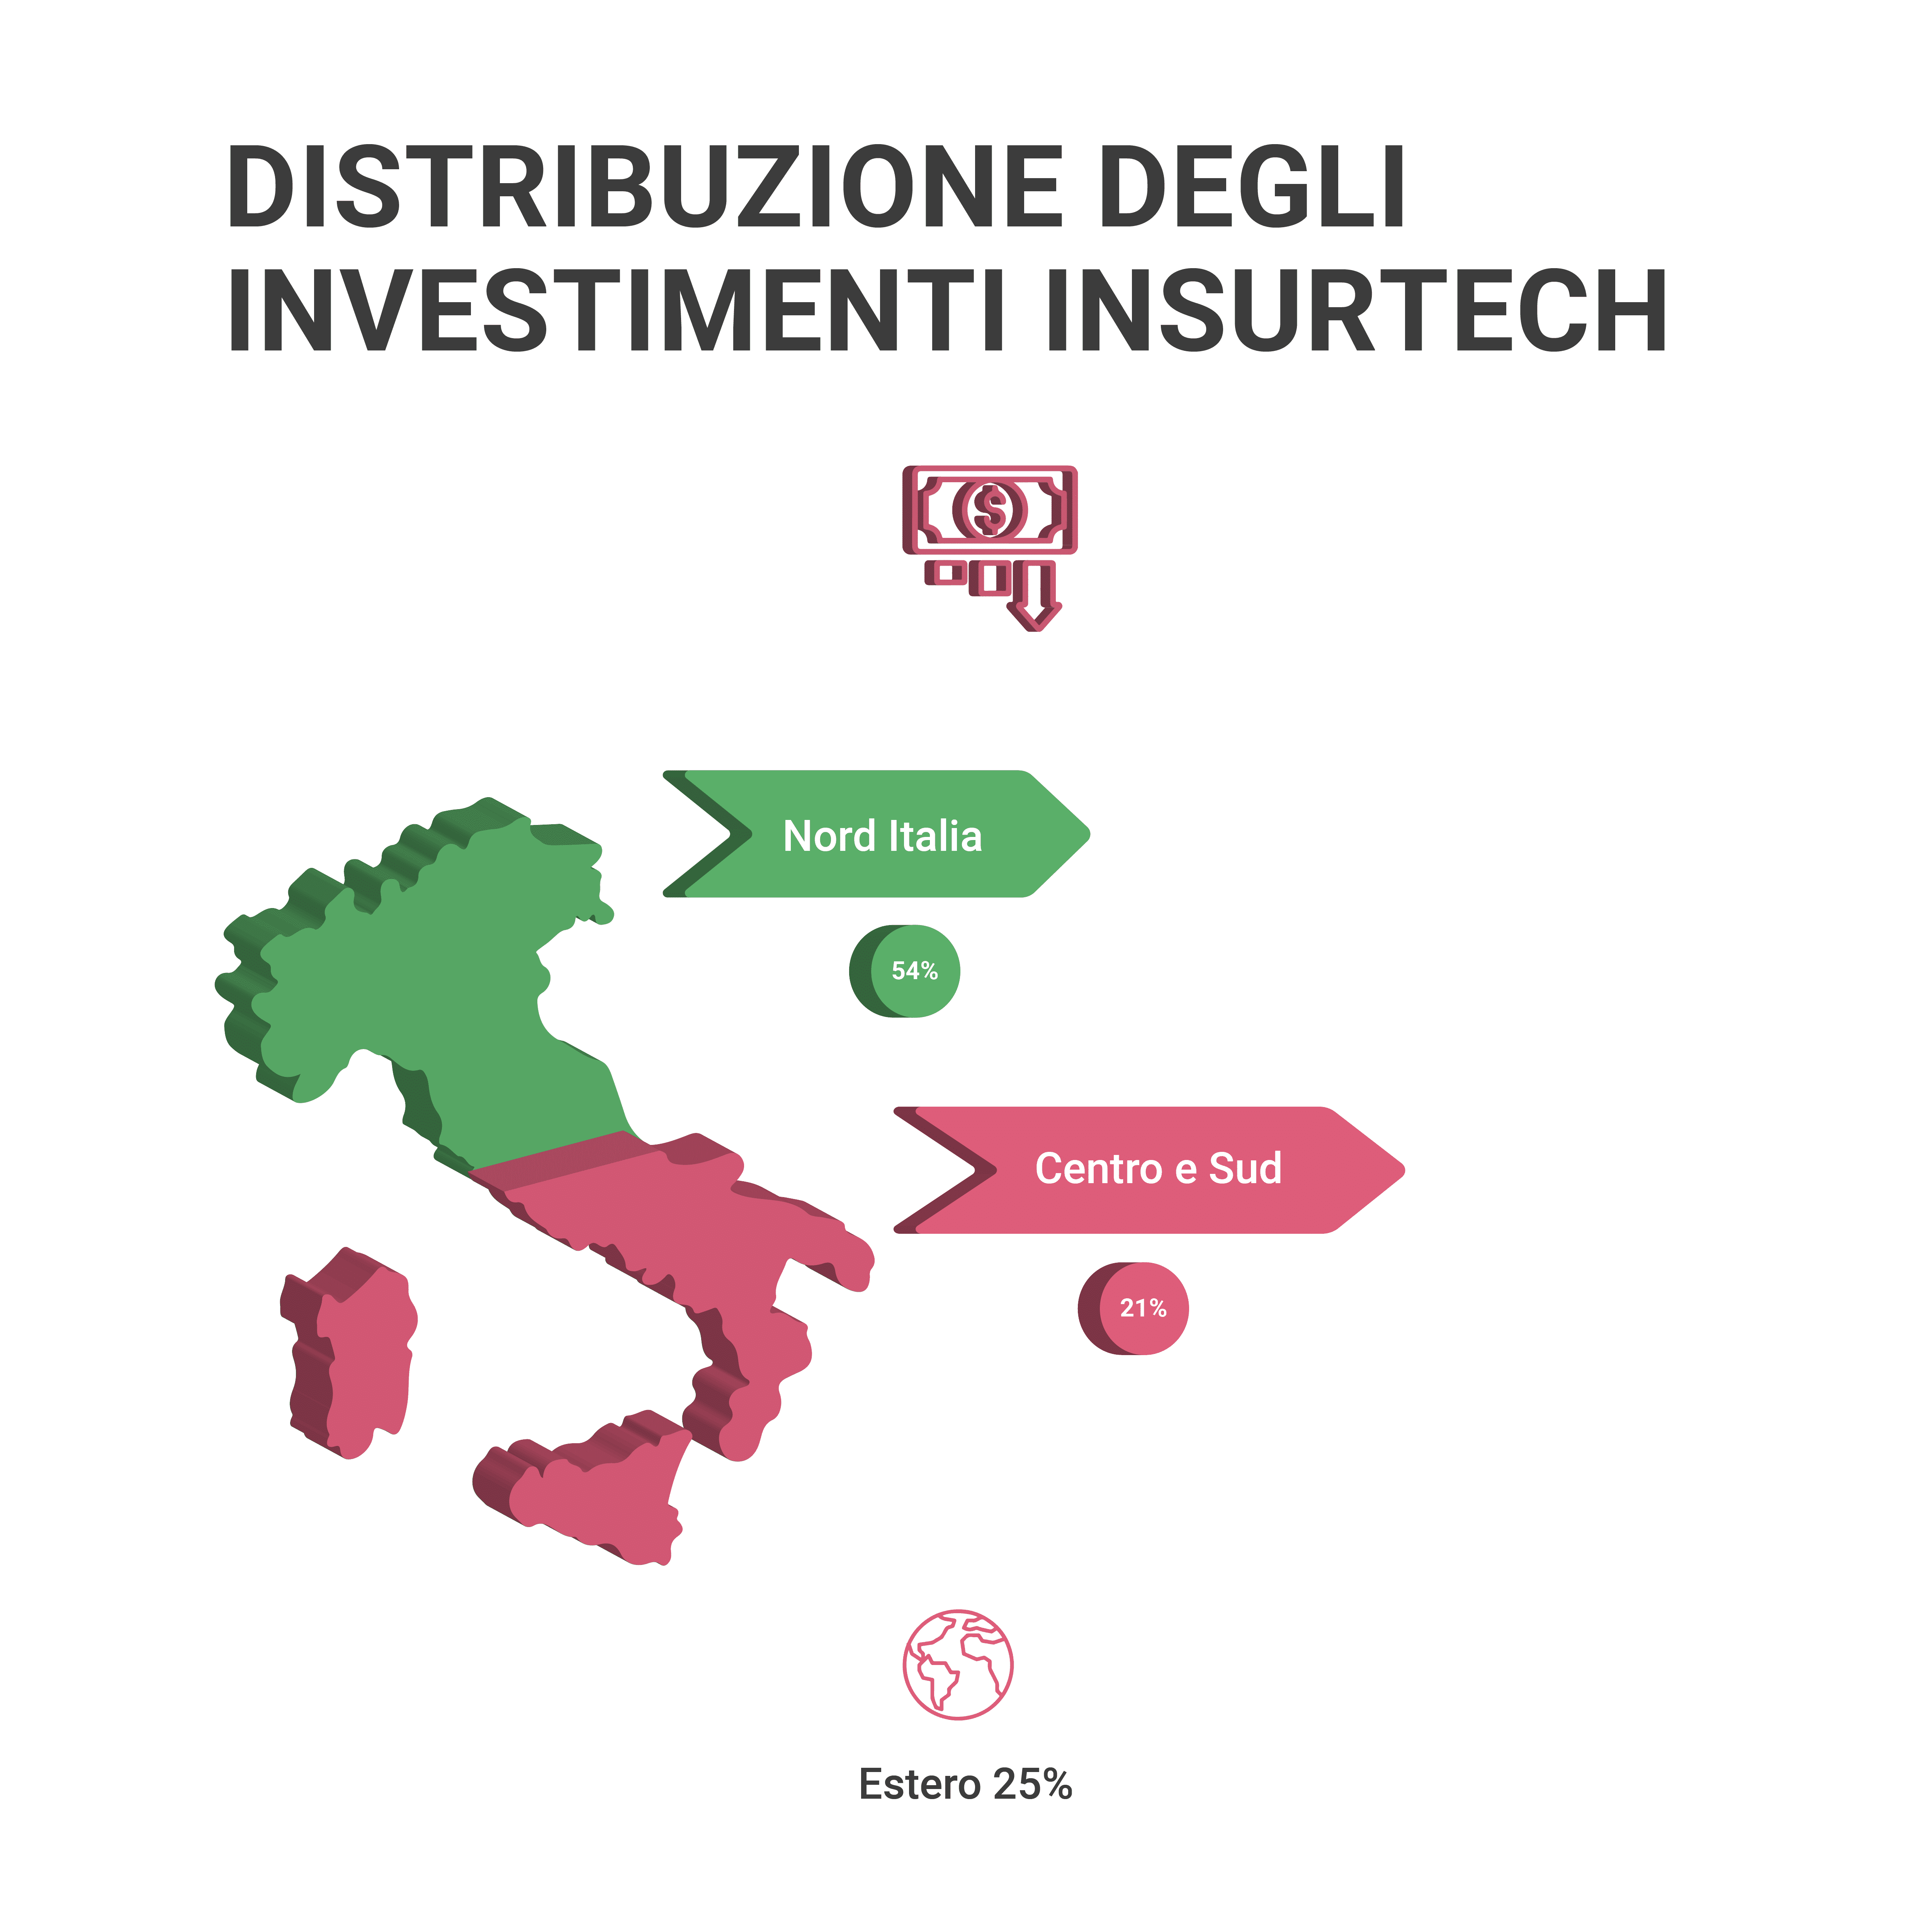 Differenza negli investimenti tra nord e sud Italia nell'assicurativo e nell'insurtech